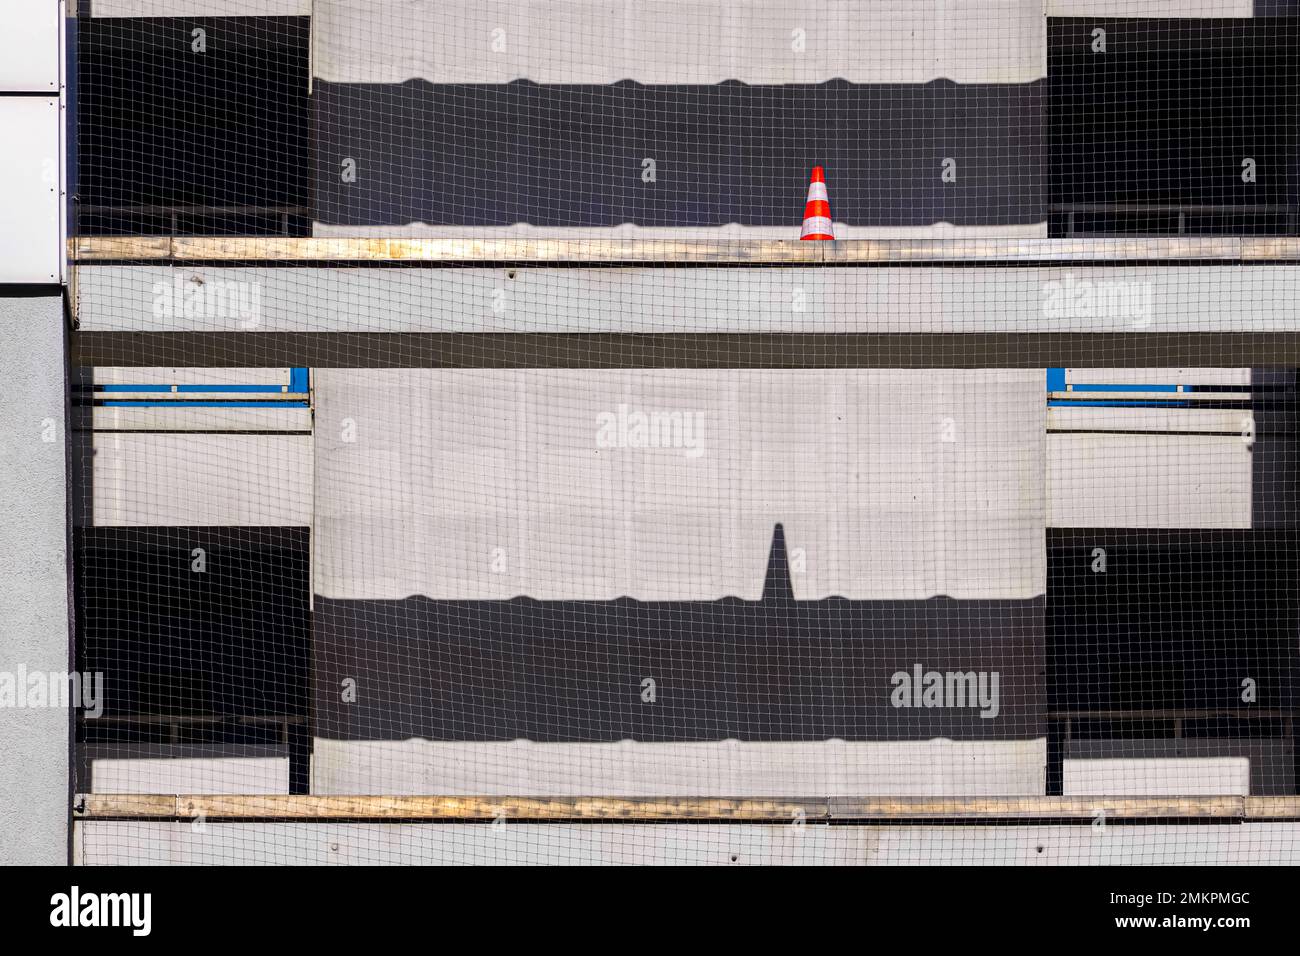 Rénovation de la façade de la maison à Berlin. Un cône de construction rouge et blanc sur un échafaudage projette son ombre sous la forme d'un ECG sur un mur du sol en dessous. Banque D'Images